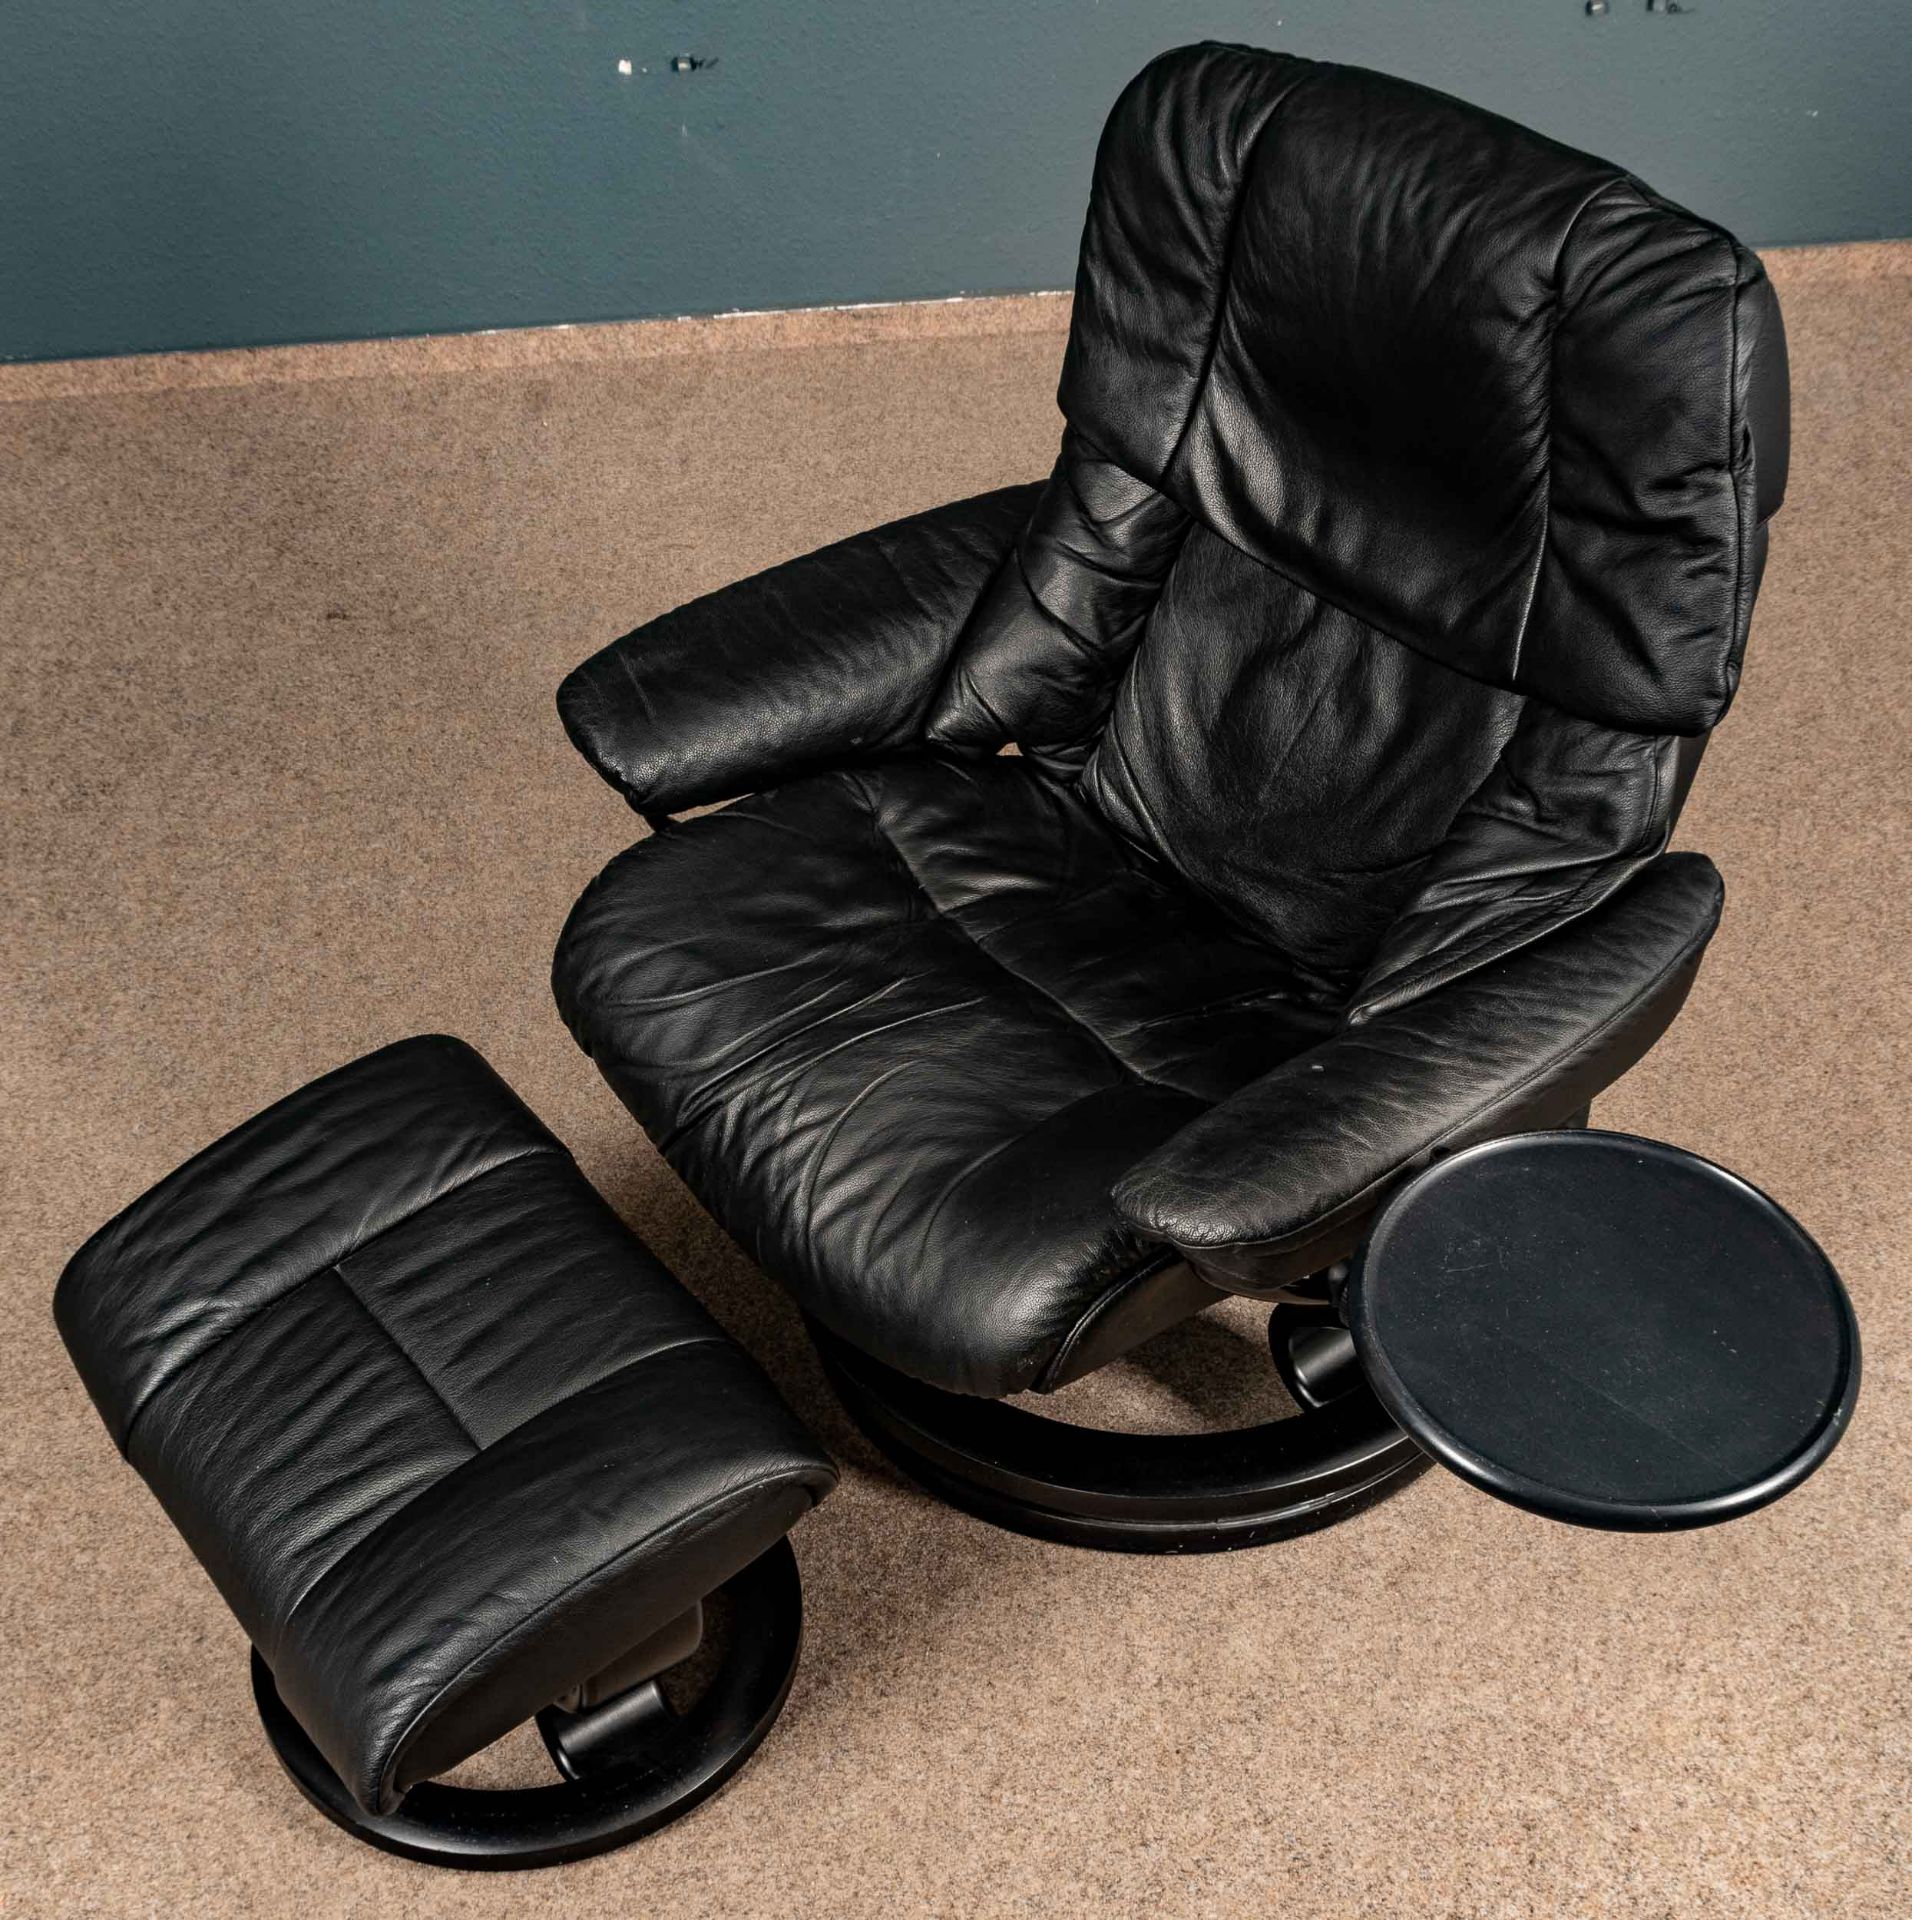 Großer "STRESSLESS" - Sessel mit passendem Hocker, an Armlehne mit beweglicher Ablage. Schöner, geb - Bild 2 aus 10